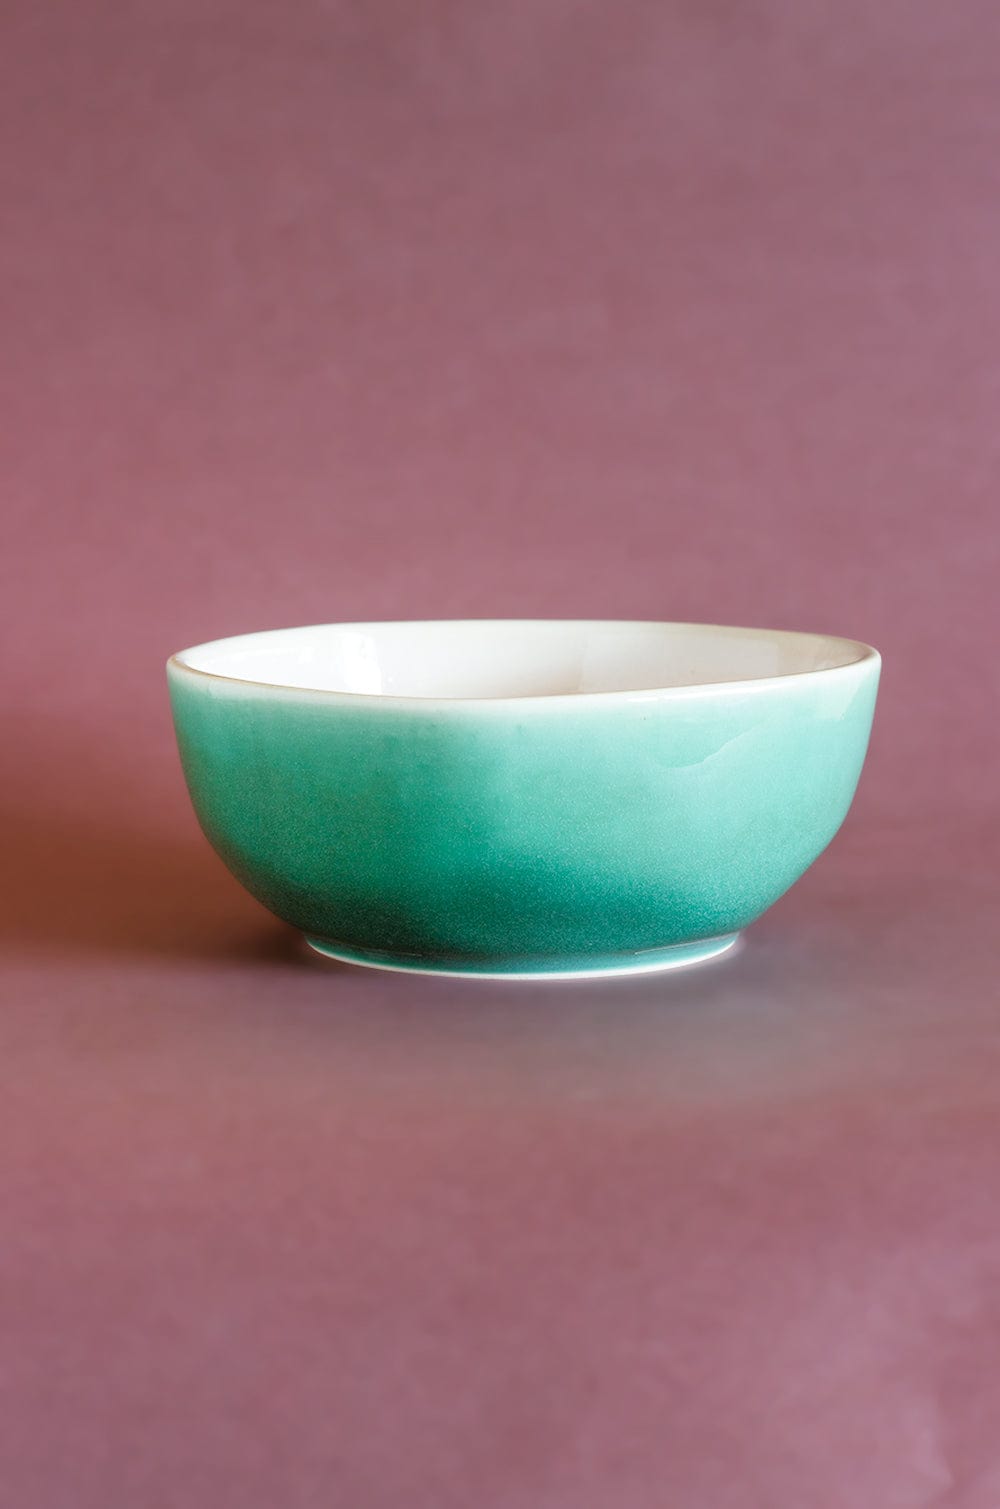 Bisque Ceramic Organic Shape Bowl - Medium